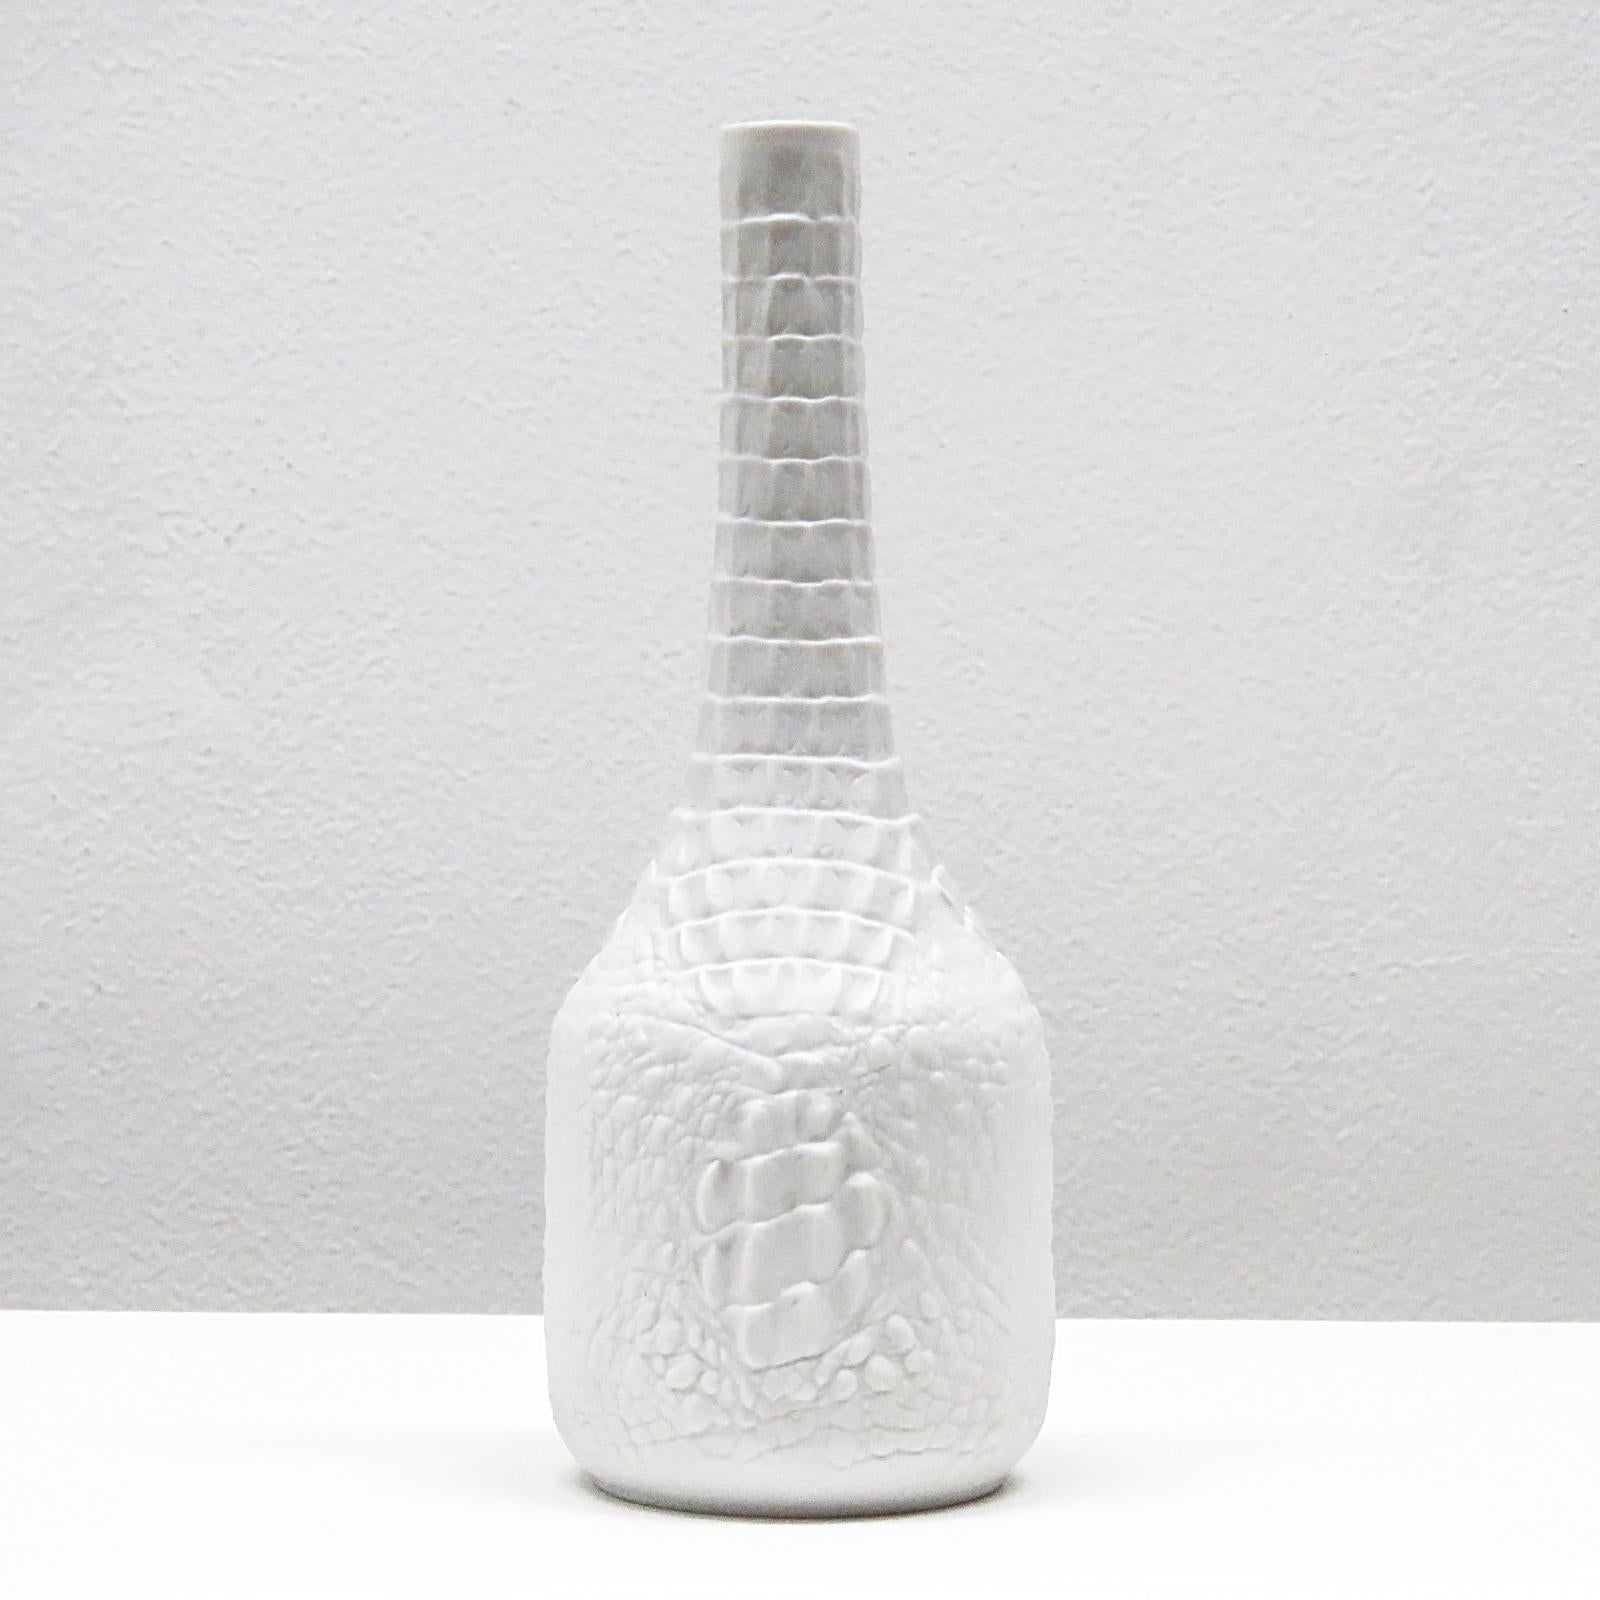 Hübsche Vase aus Biskuitporzellan mit Reptilienrelief, Modell Nr. 248 (hohe Ausführung).